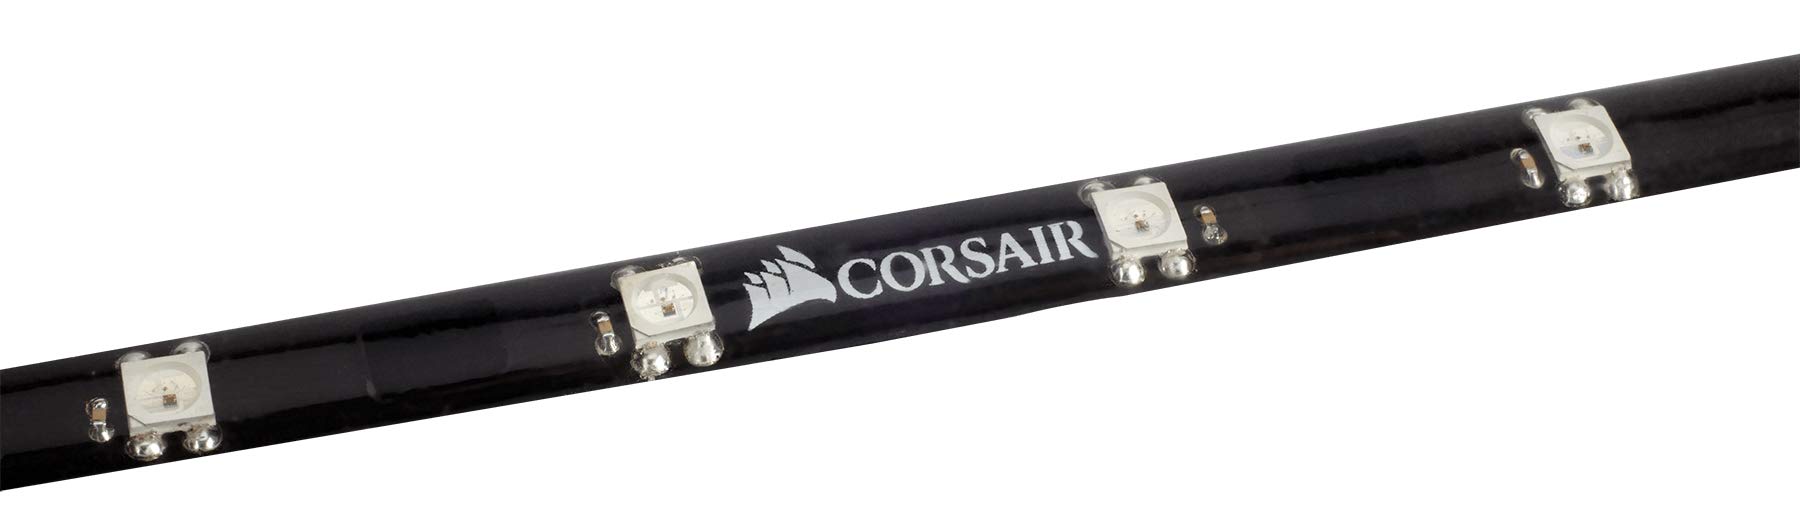 Corsair CL-8930002 Lighting PRO-Erweiterungskit (mit 4 x RGB-LED-Beleuchtungsstreifen)